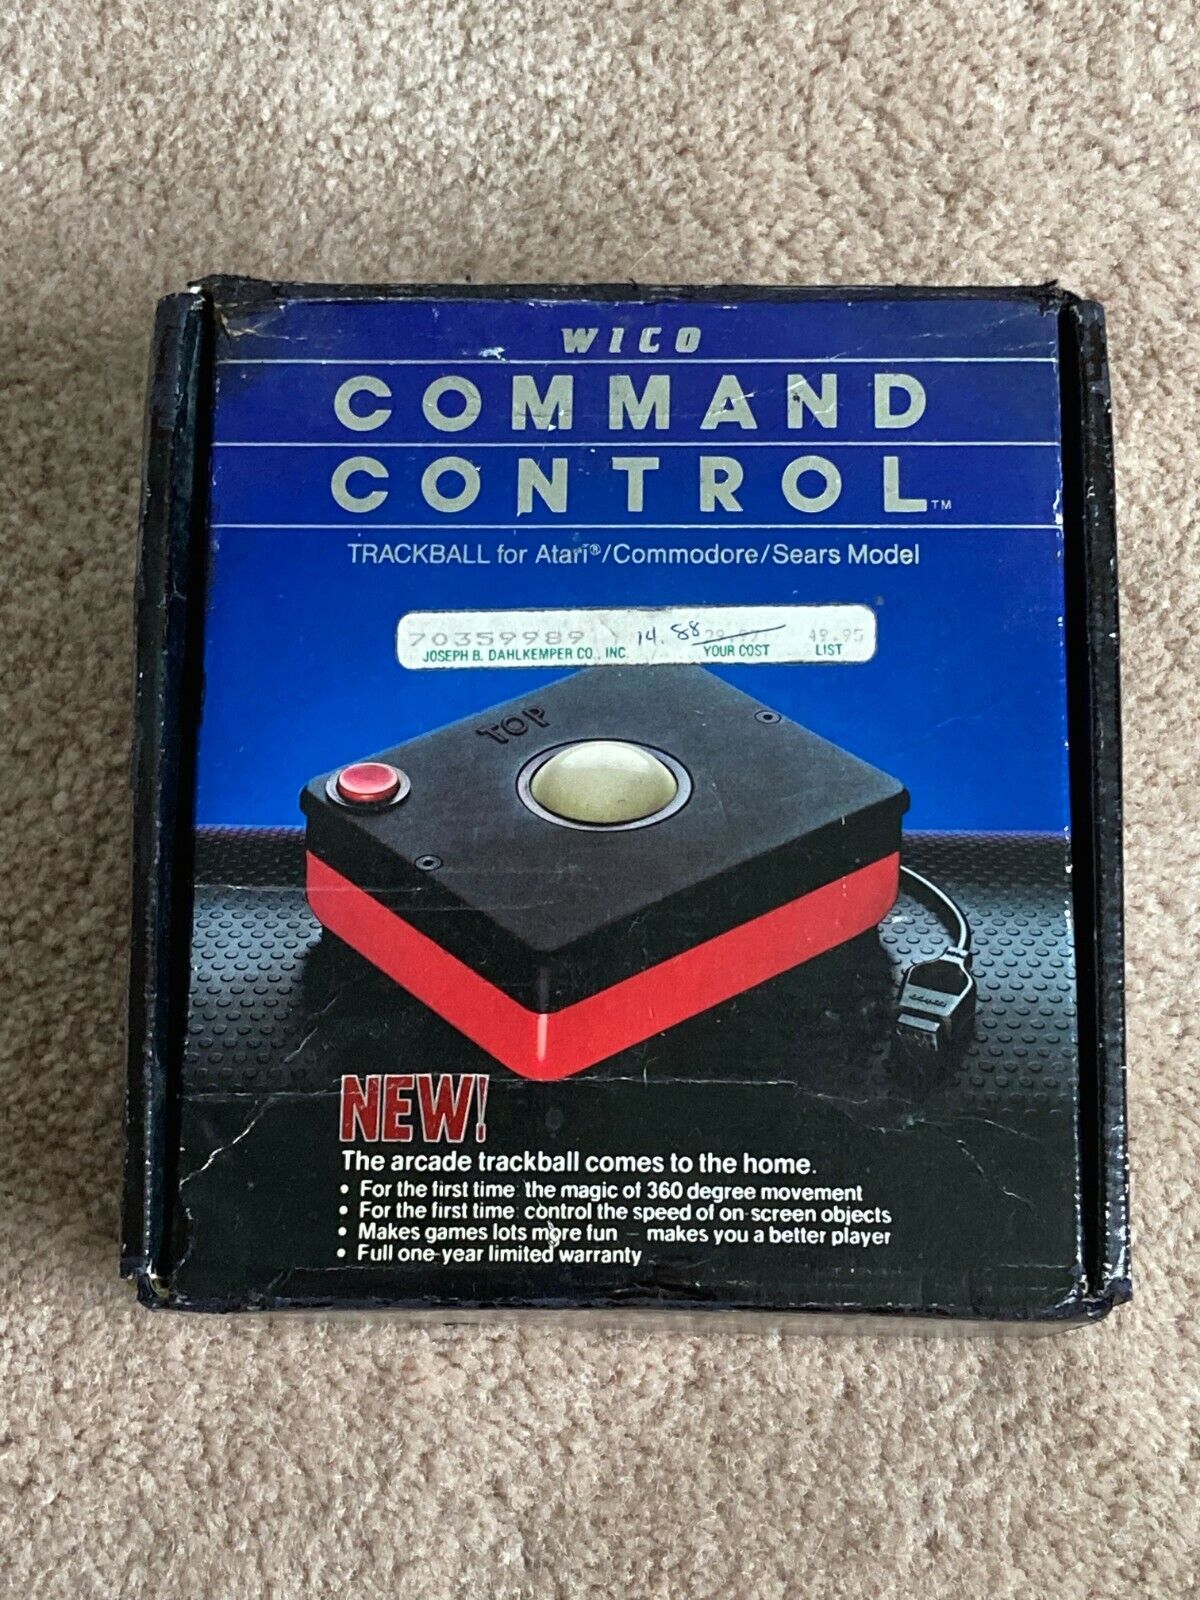 Wico Command Control Arcade Trackball Atari Commodore-64 Vic-20 Original Box